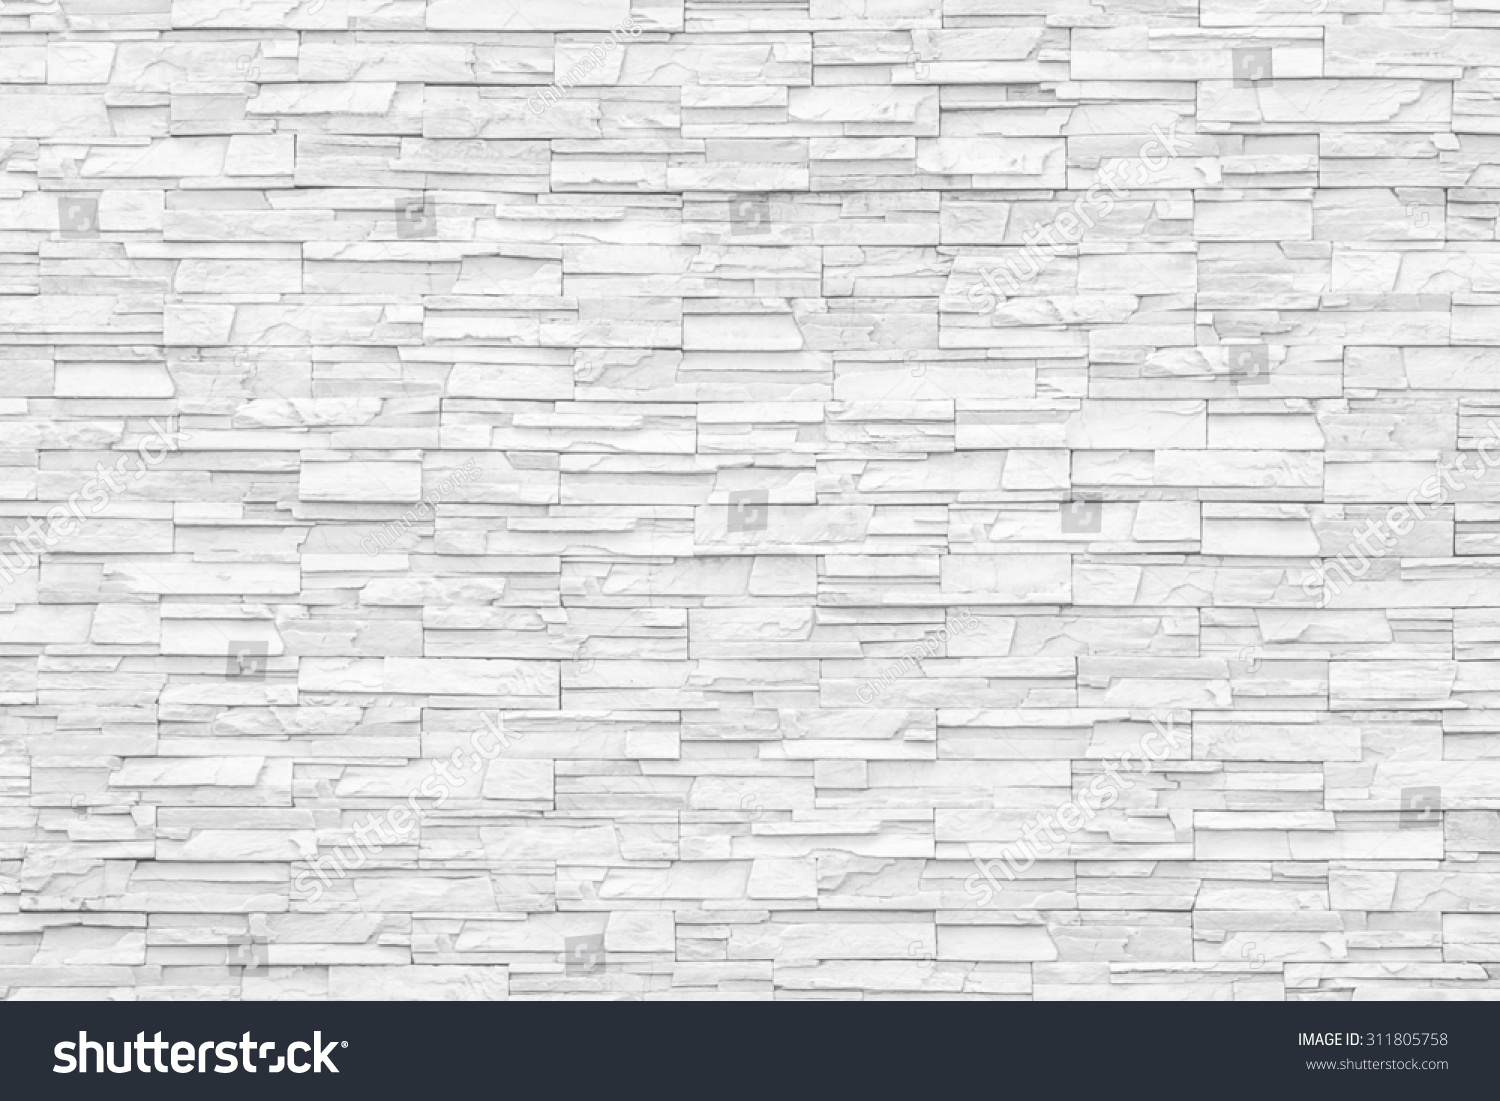 White Marble Brick Stone Tile Wall Stock Photo 311805758 ...